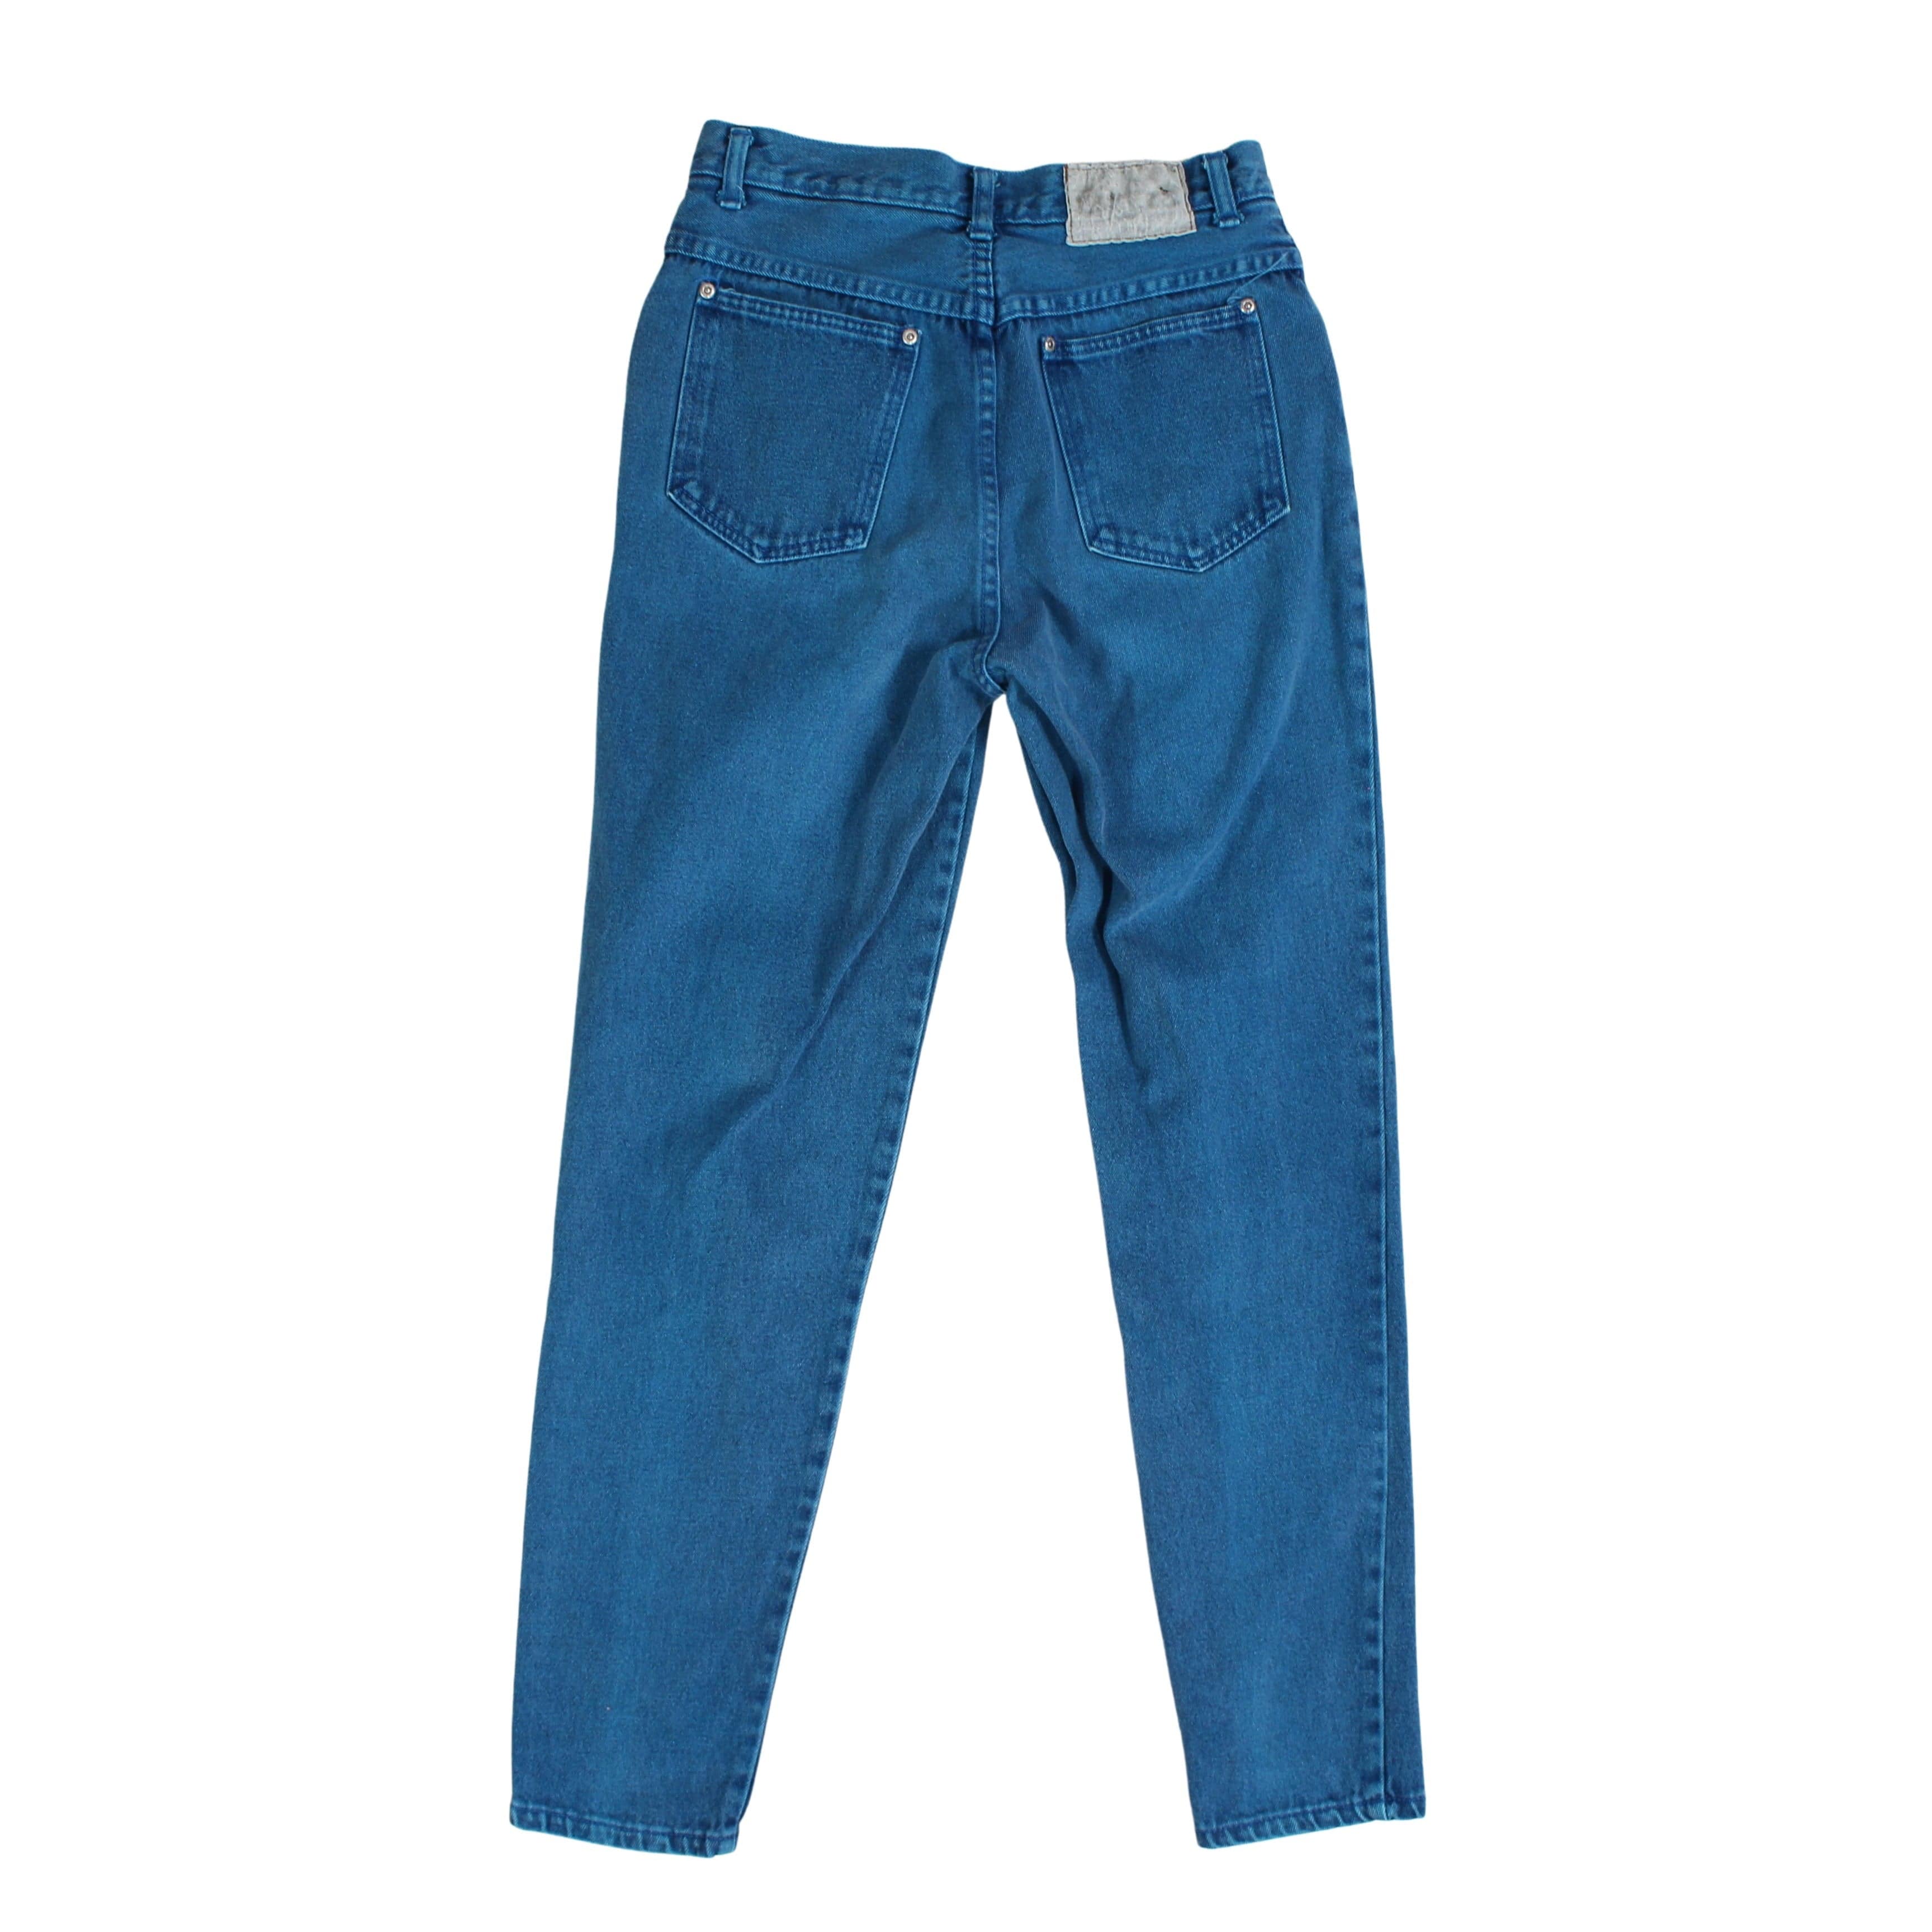 LA Blues Denim Jeans Womens Tight Size 10 – Proper Vintage